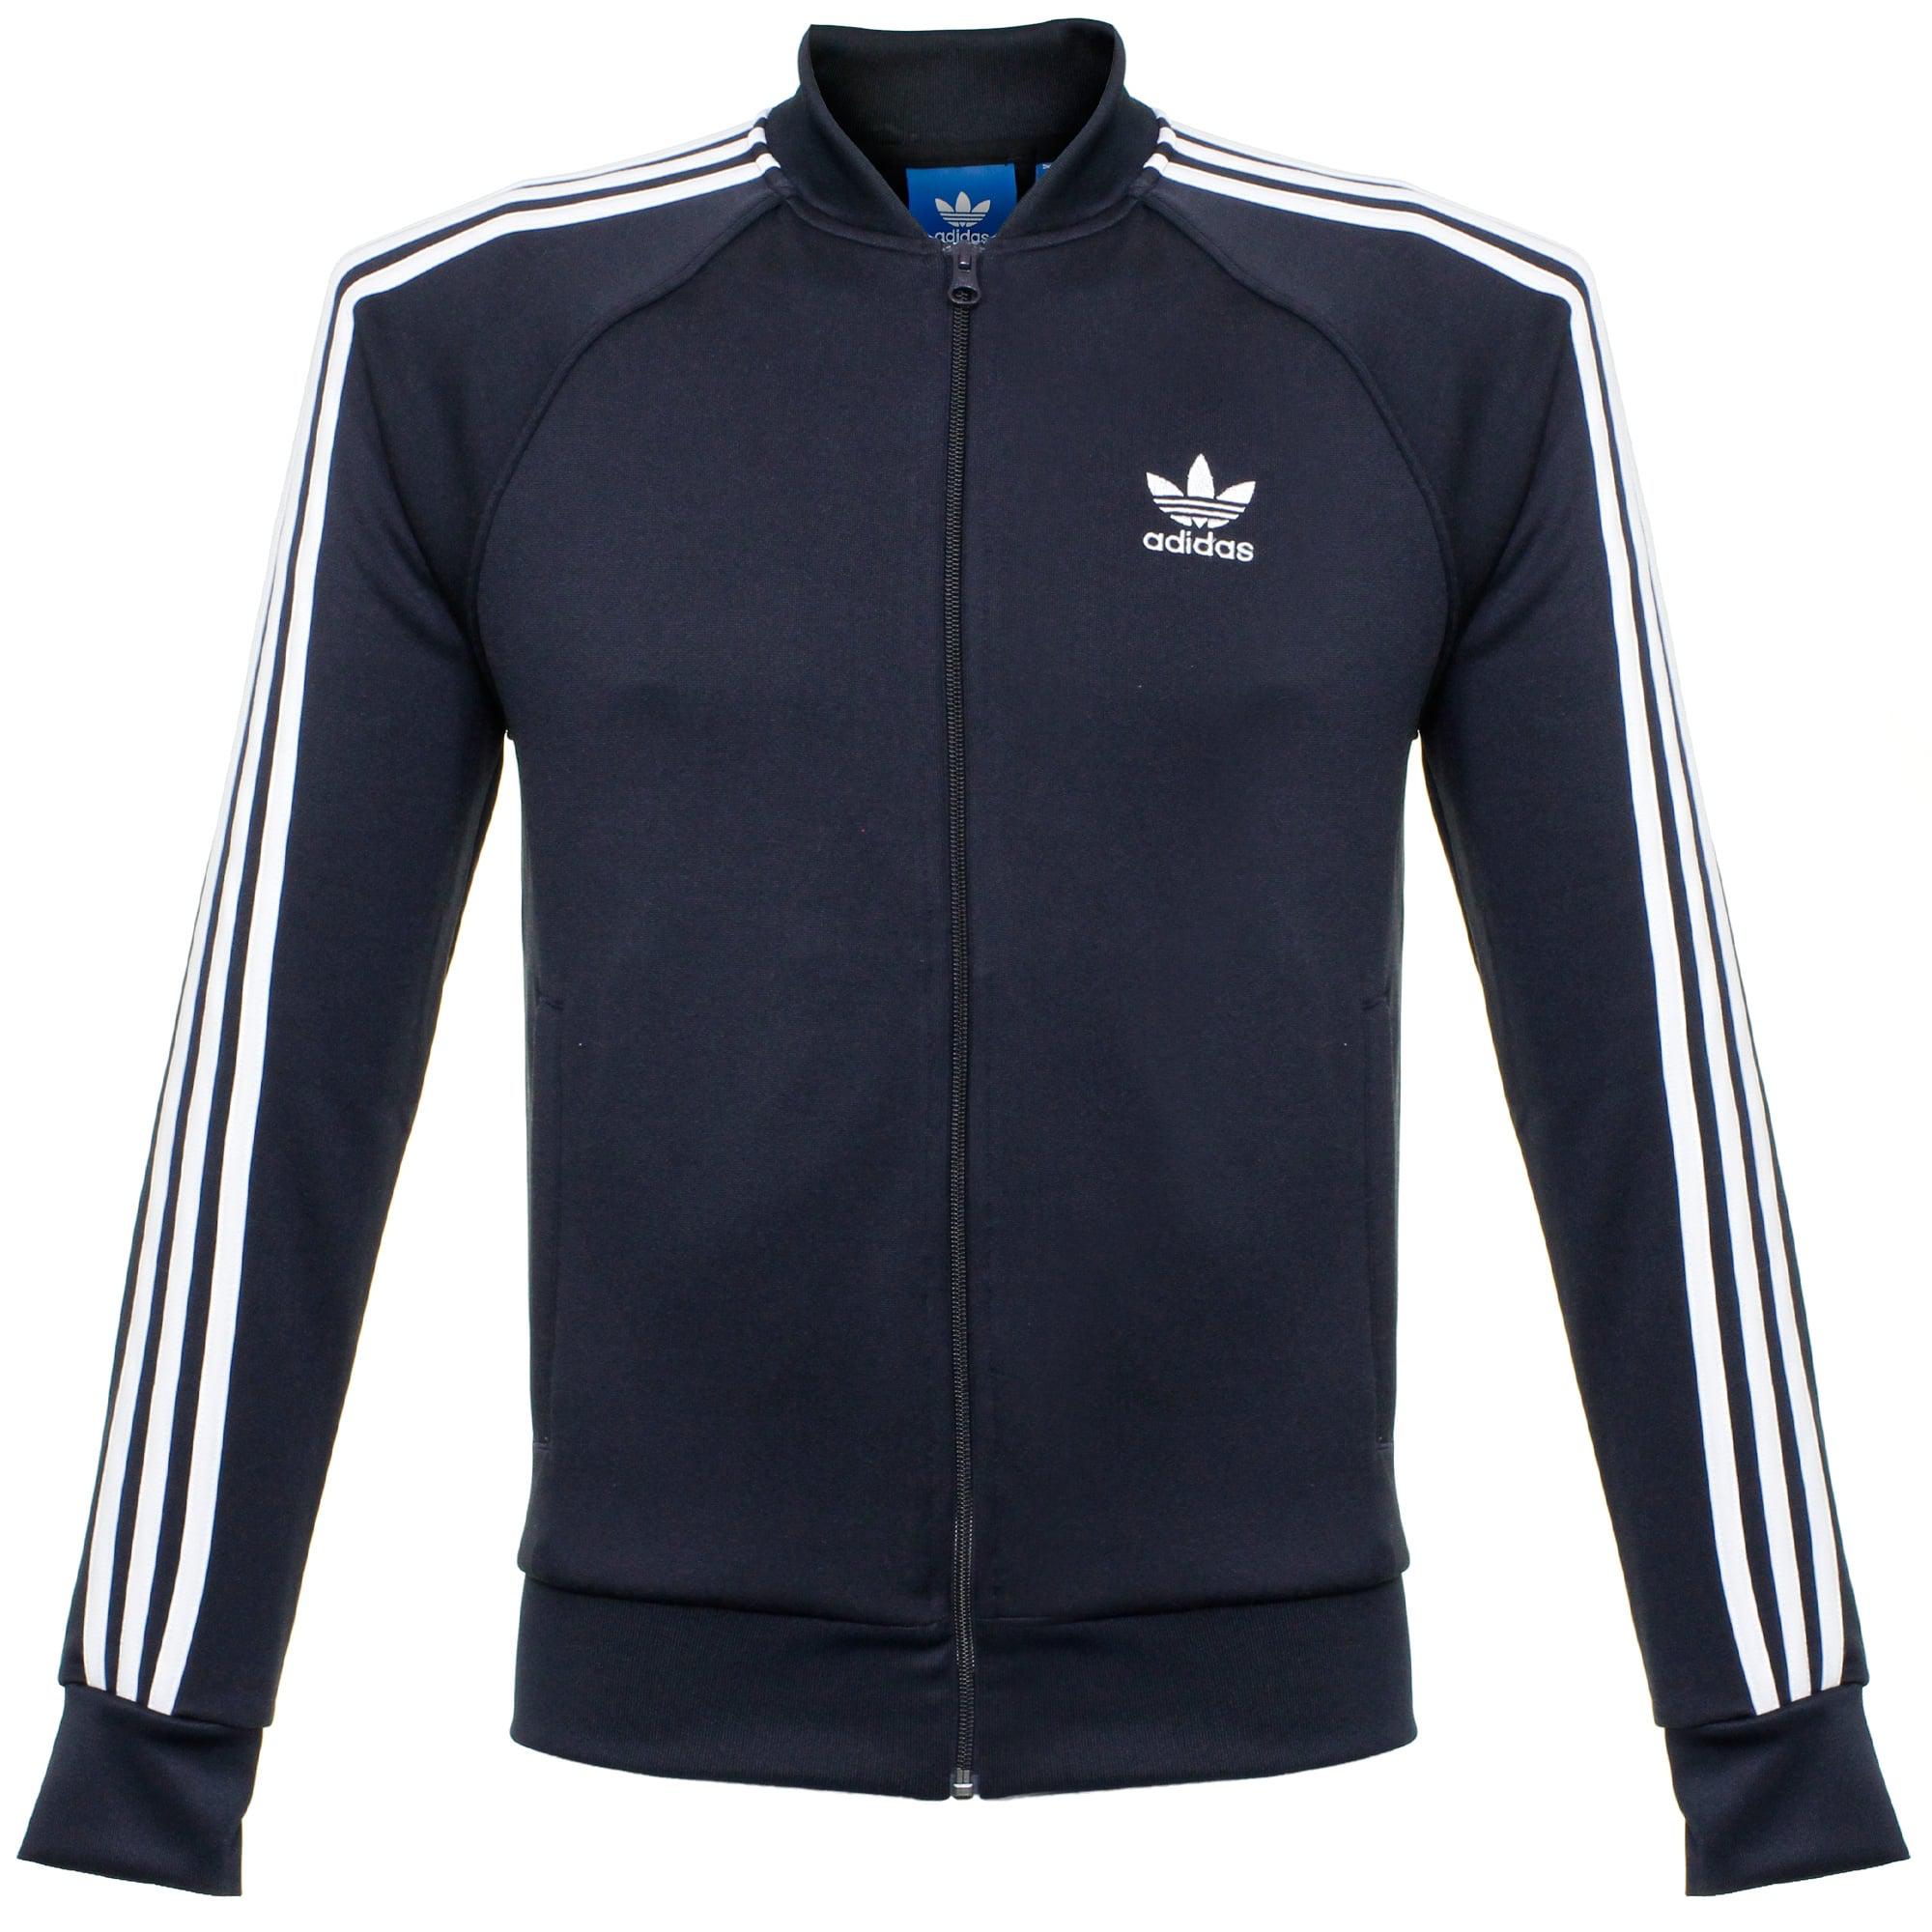 Lyst - Adidas Originals Trefoil Superstar Track Jacket in Blue for Men